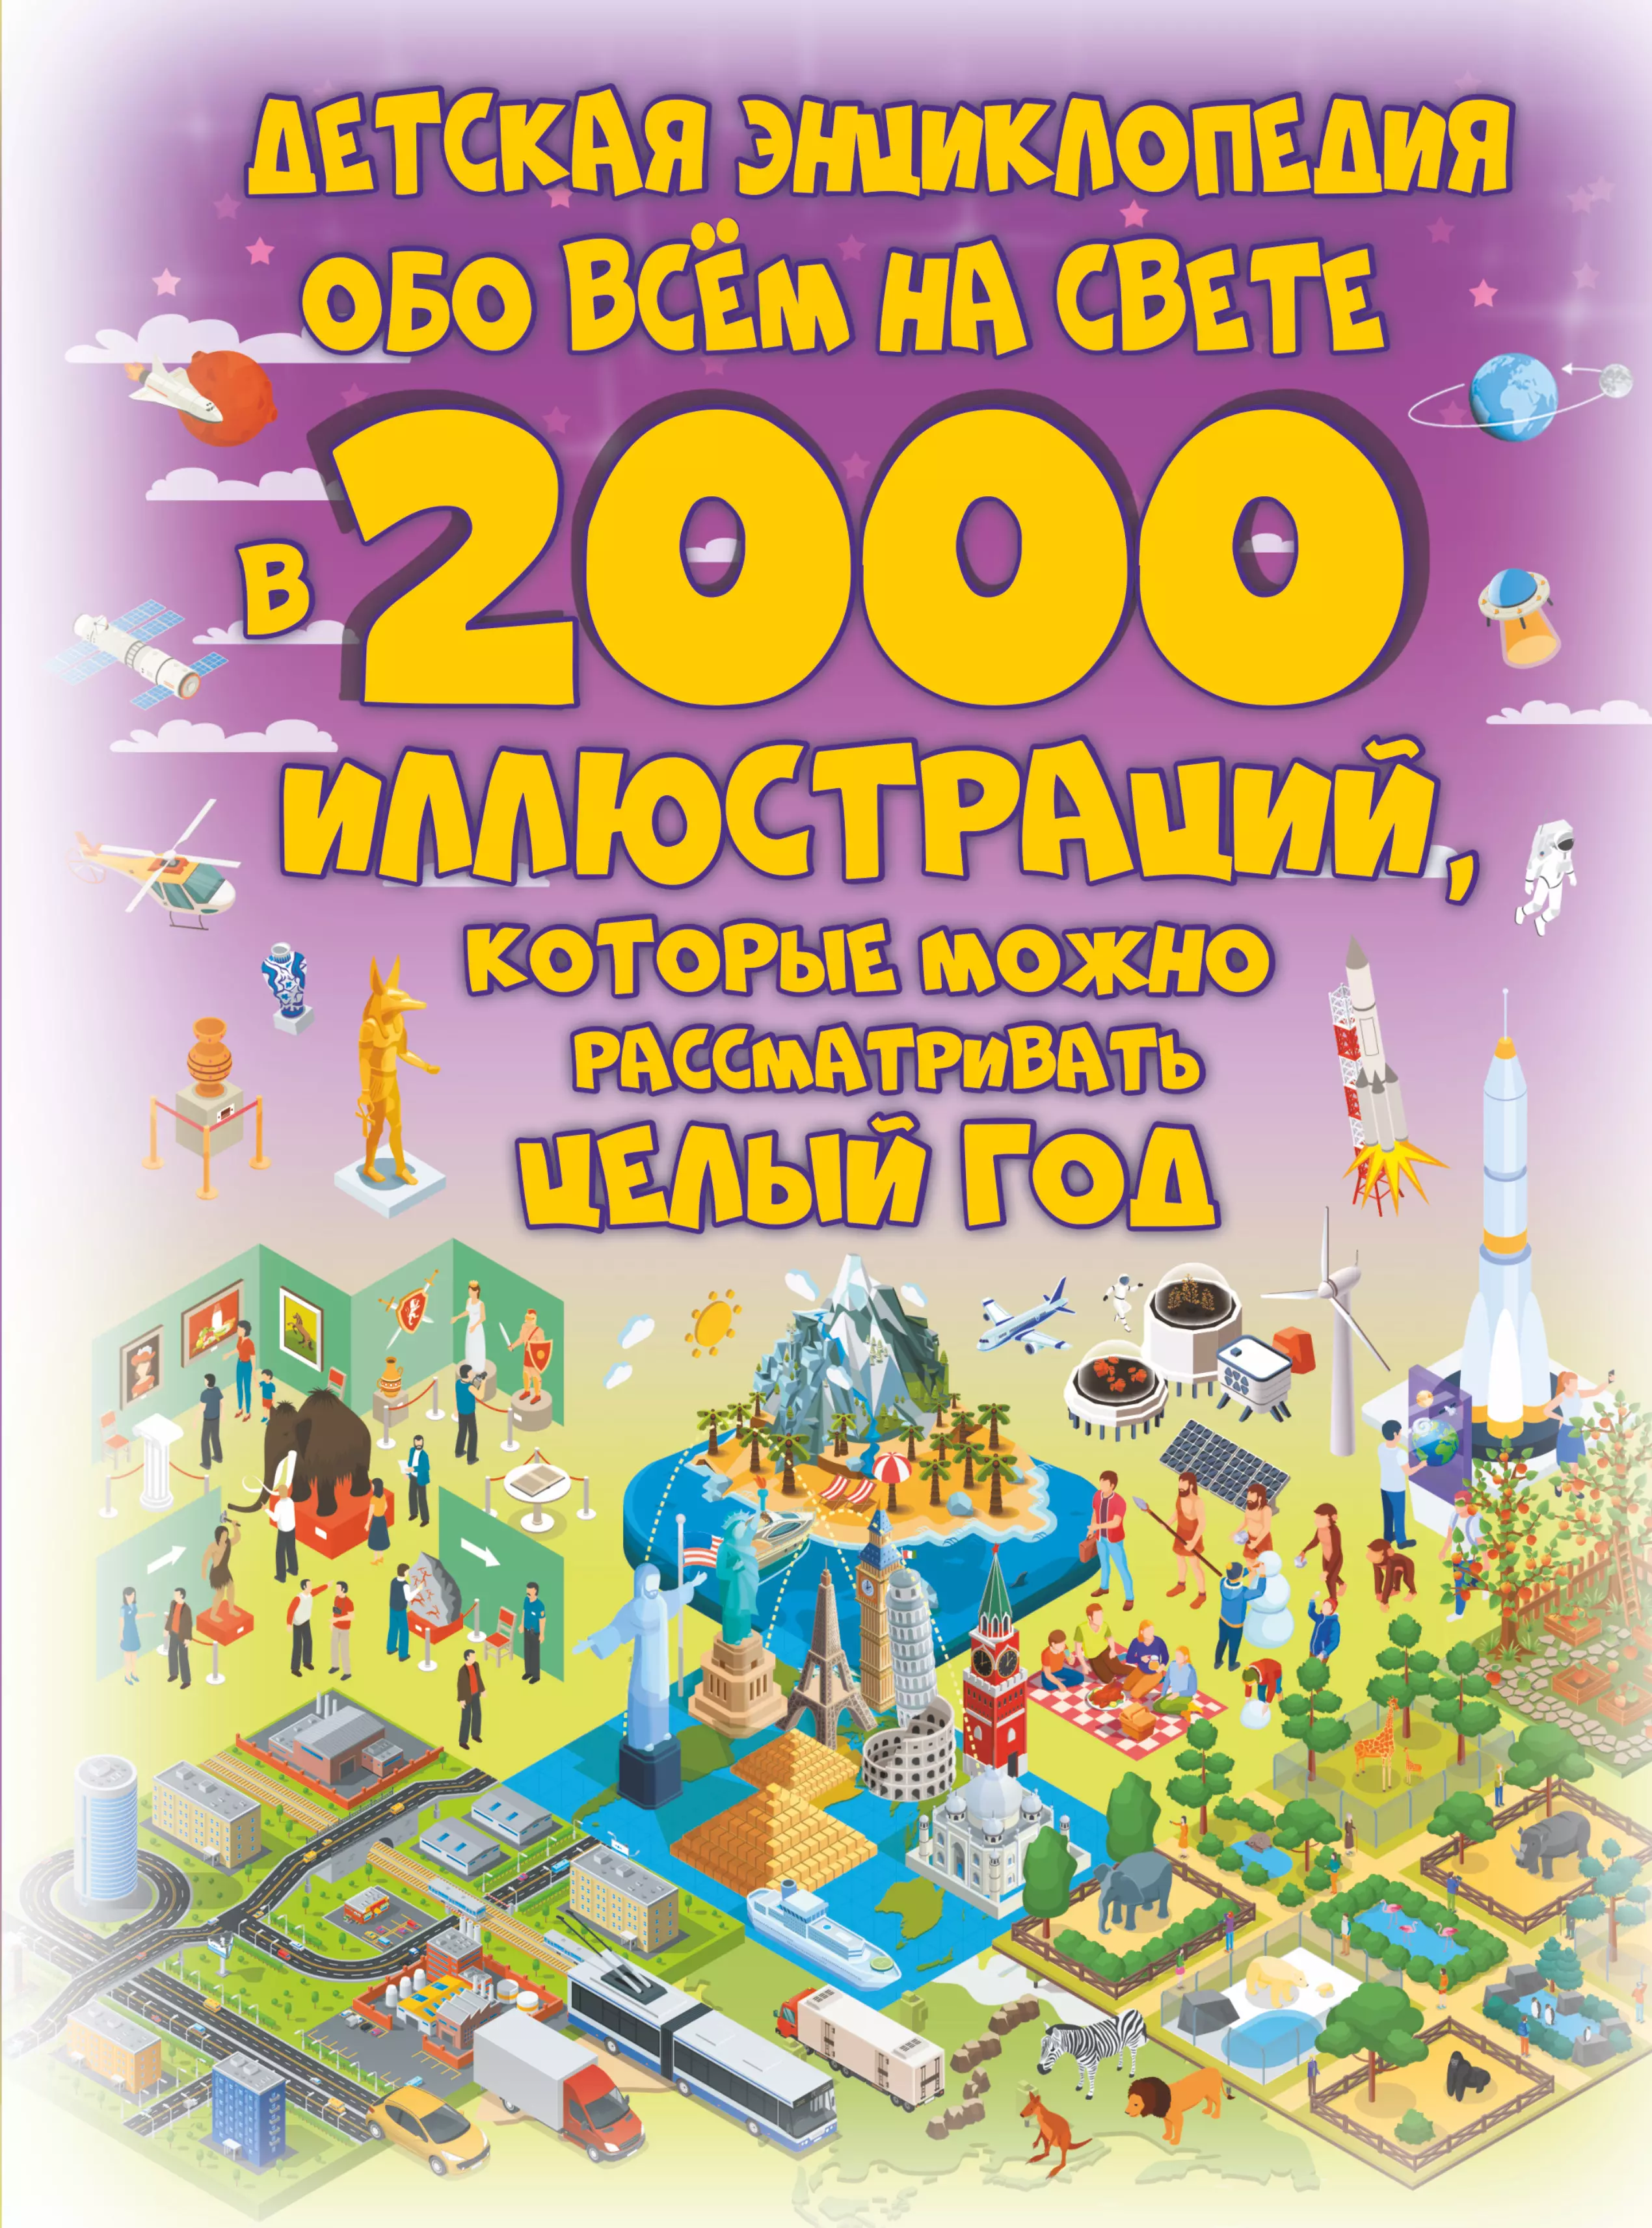 Ермакович Дарья Ивановна - Детская энциклопедия обо всем на свете в 2000 иллюстраций, которые можно рассматривать целый год